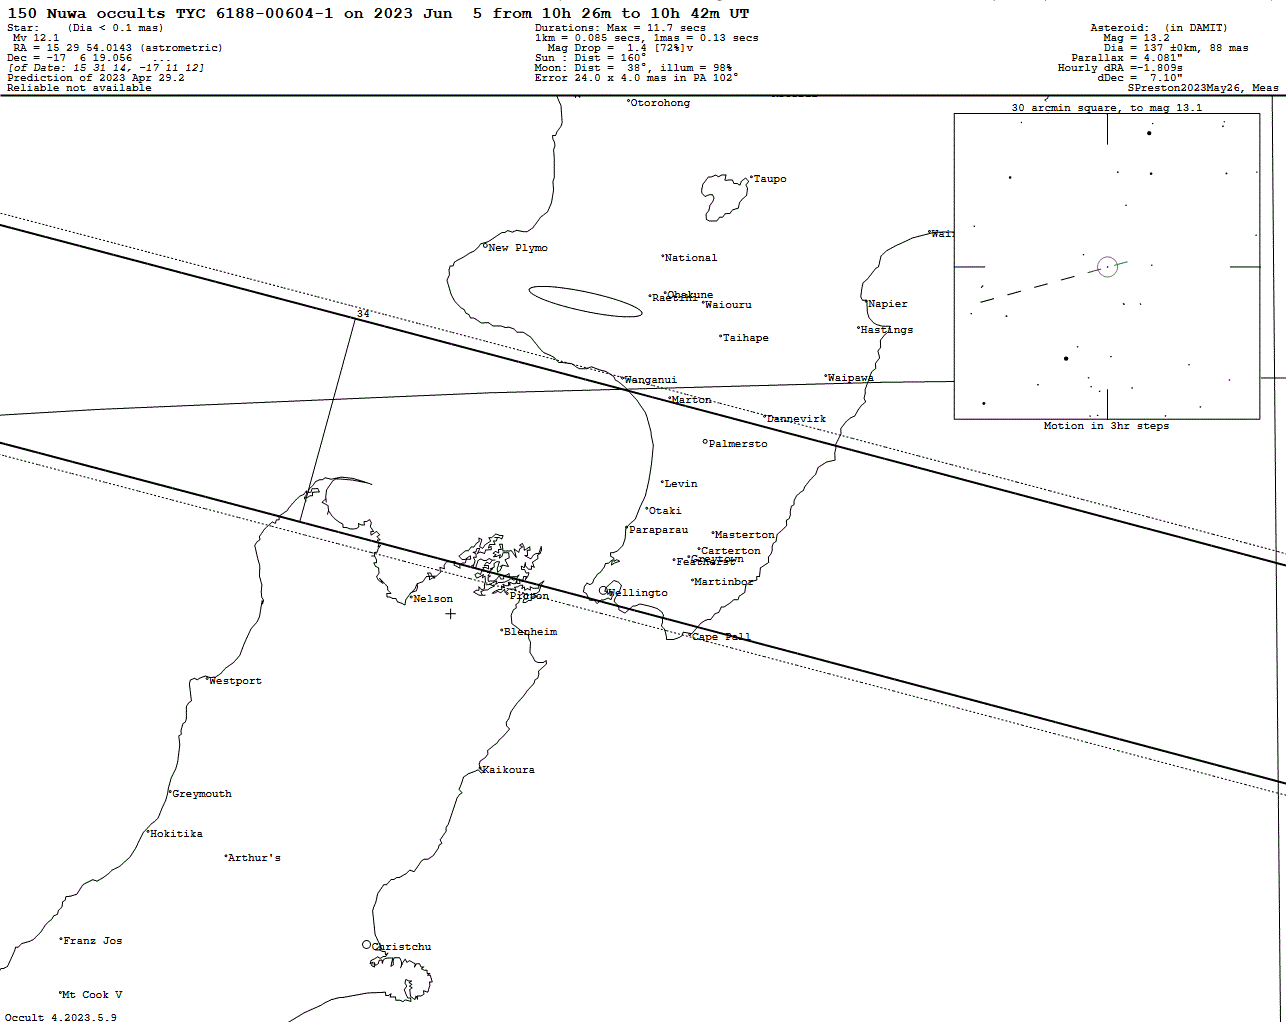 Nuwa Update Map